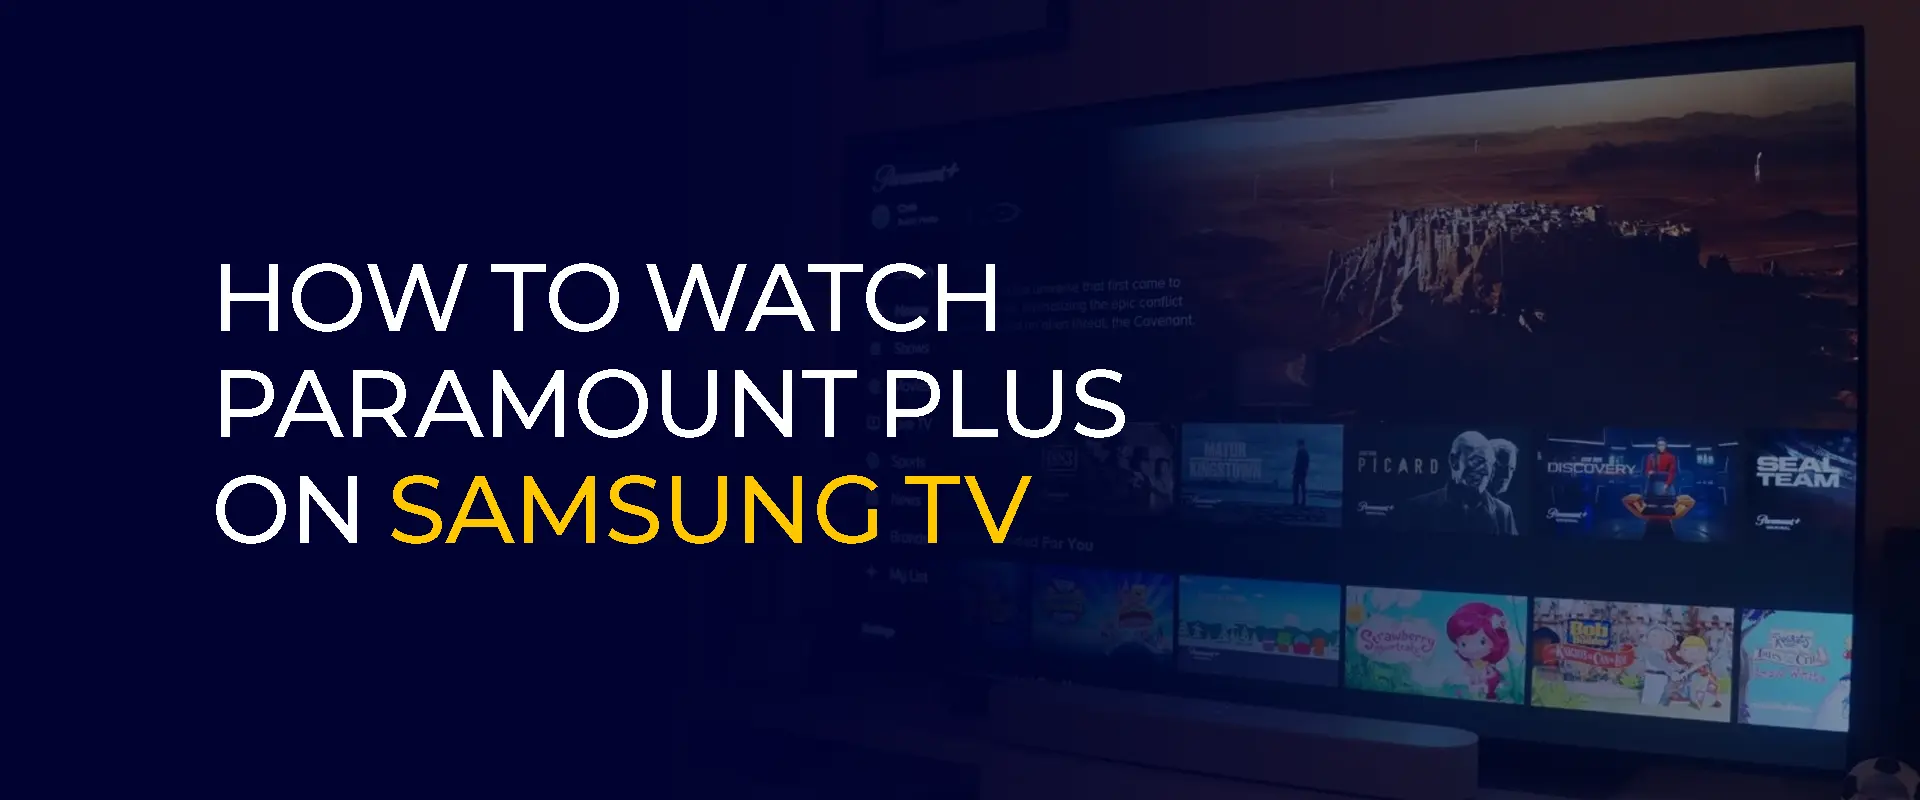 Как смотреть Paramount Plus на телевизоре Samsung